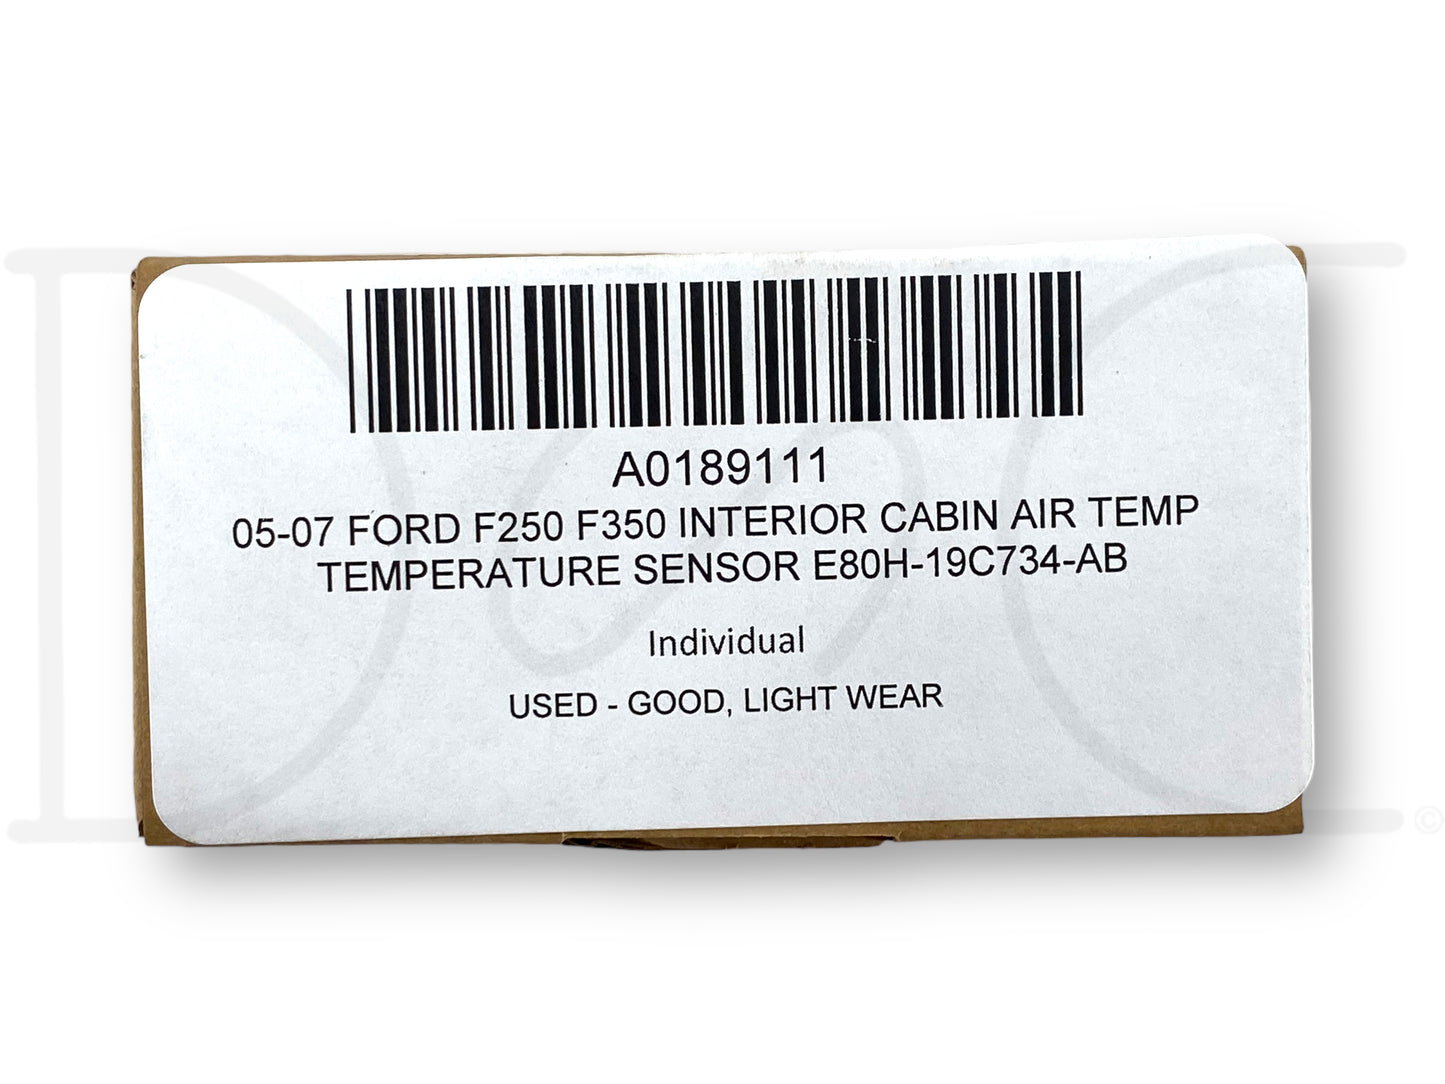 05-07 Ford F250 F350 Interior Cabin Air Temp Temperature Sensor E80H-19C734-AB